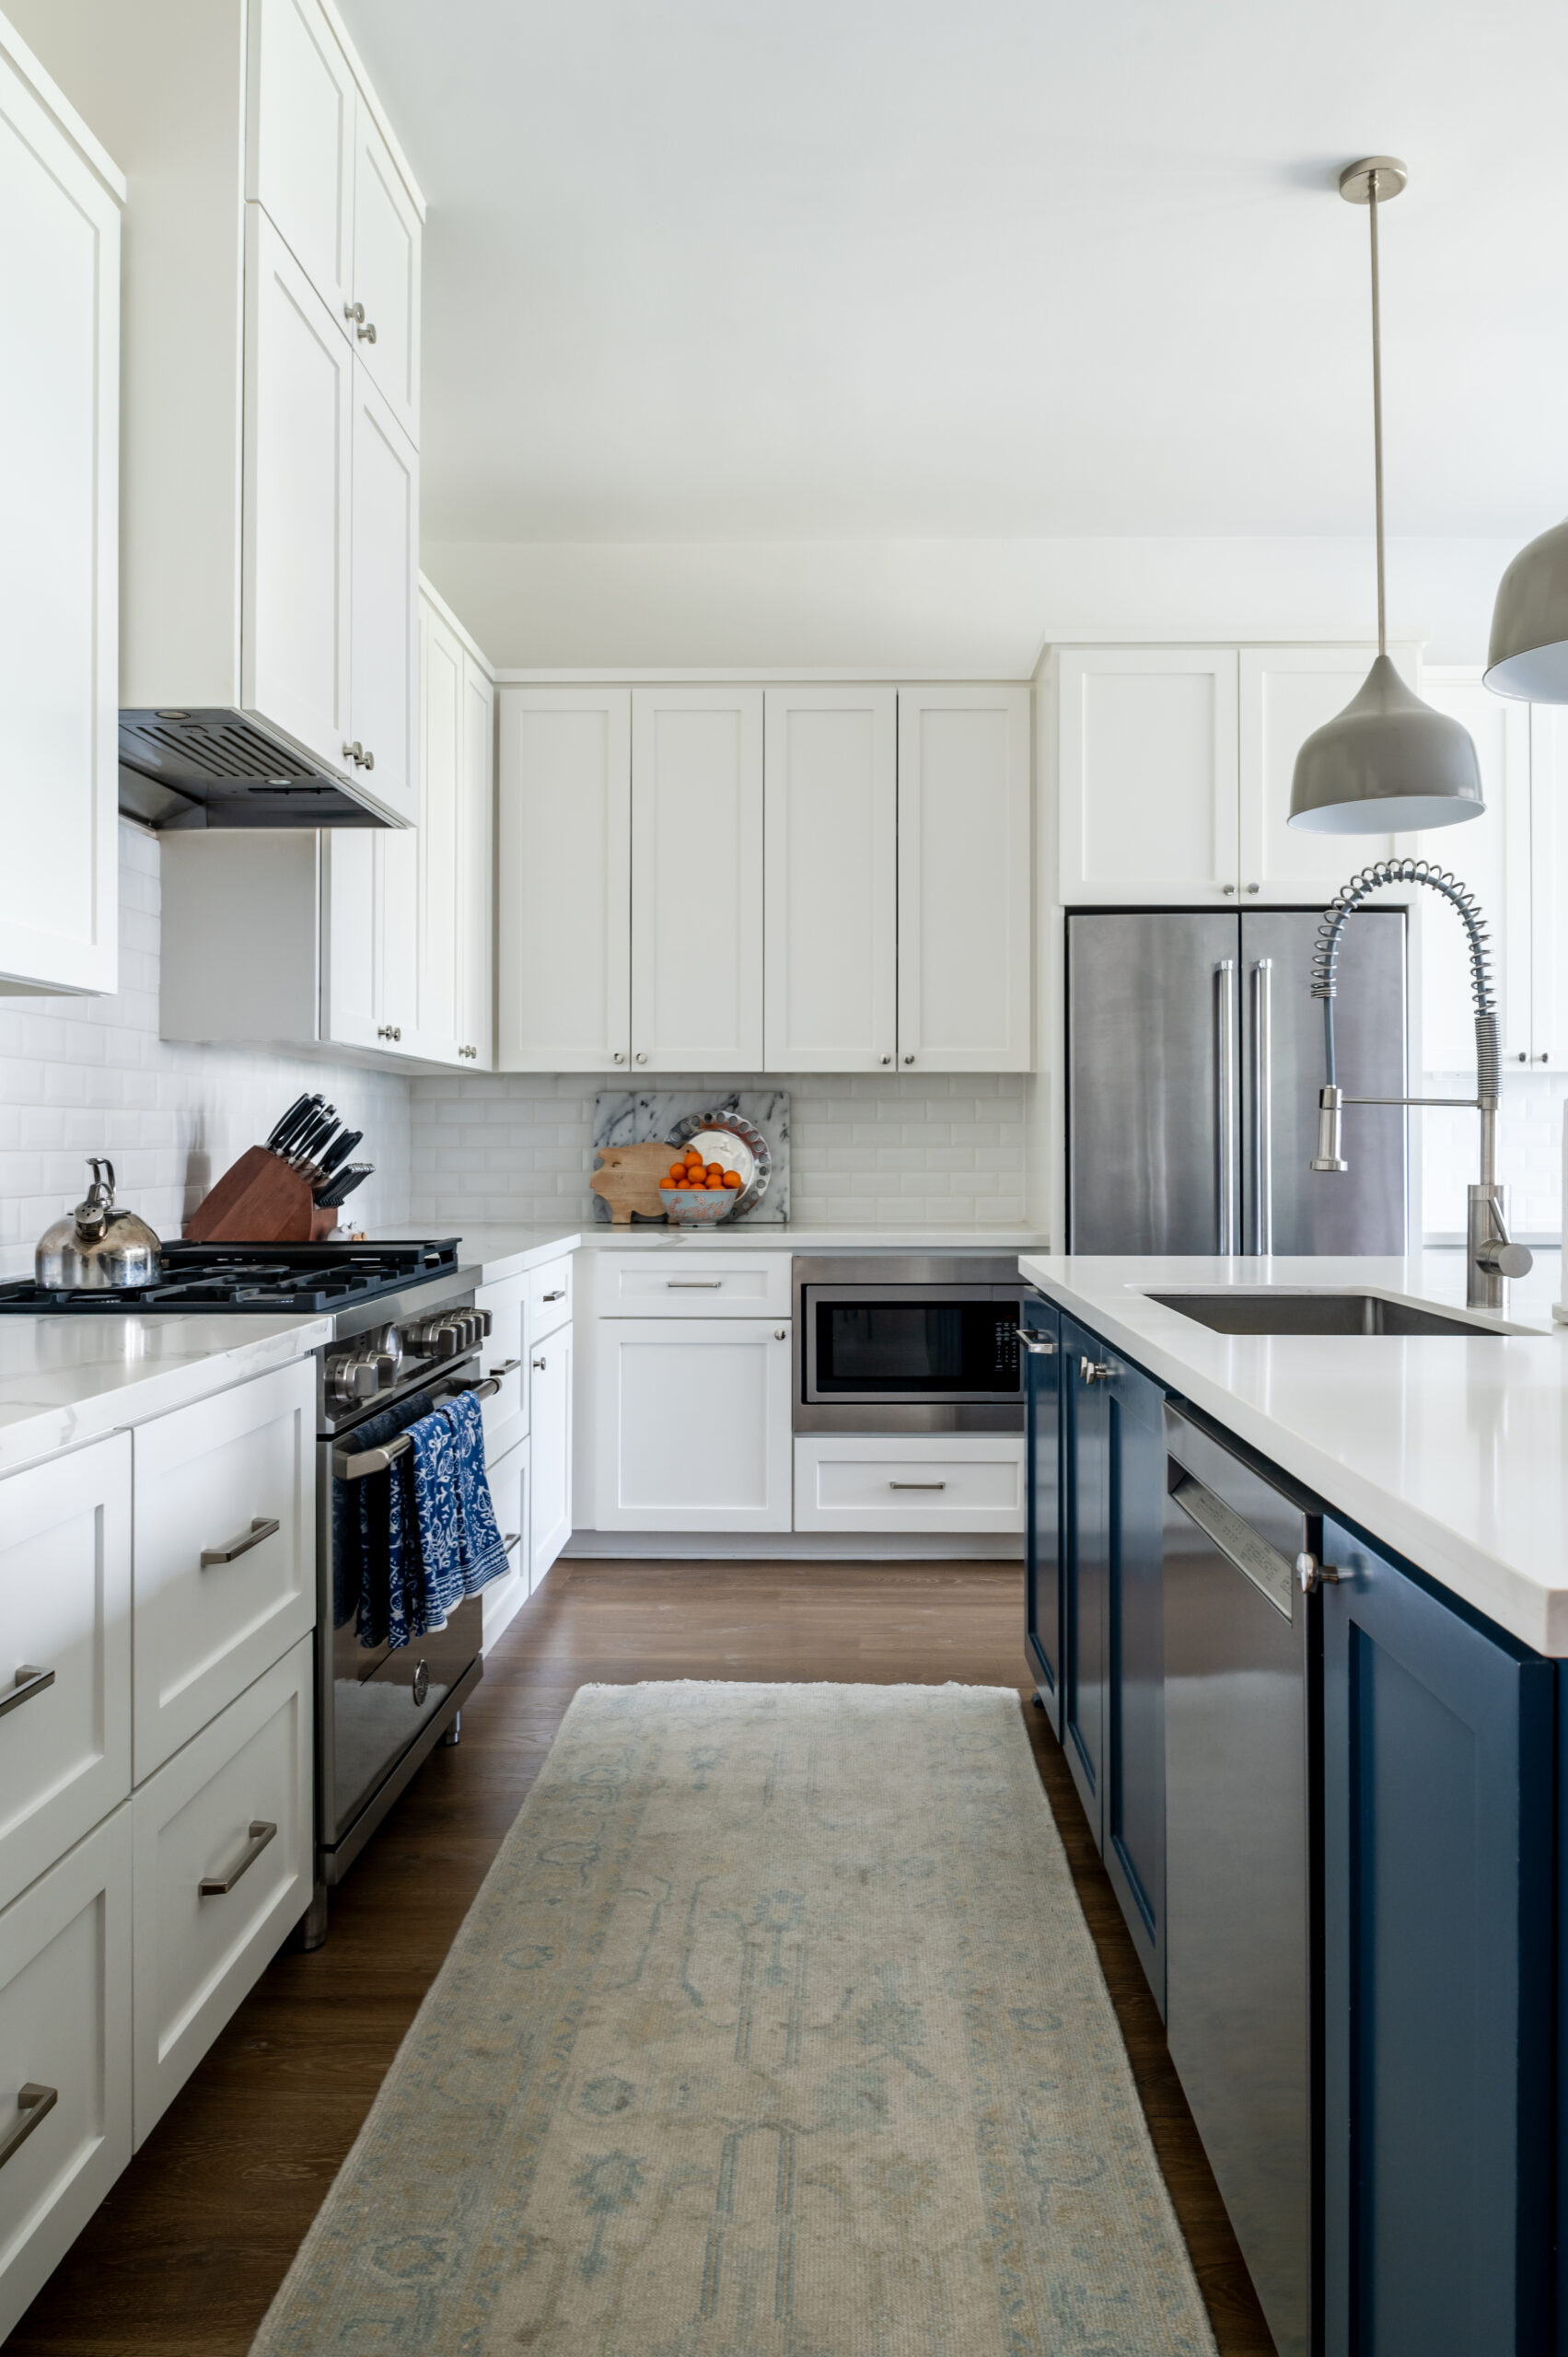 Luxury and modern kitchen interior design